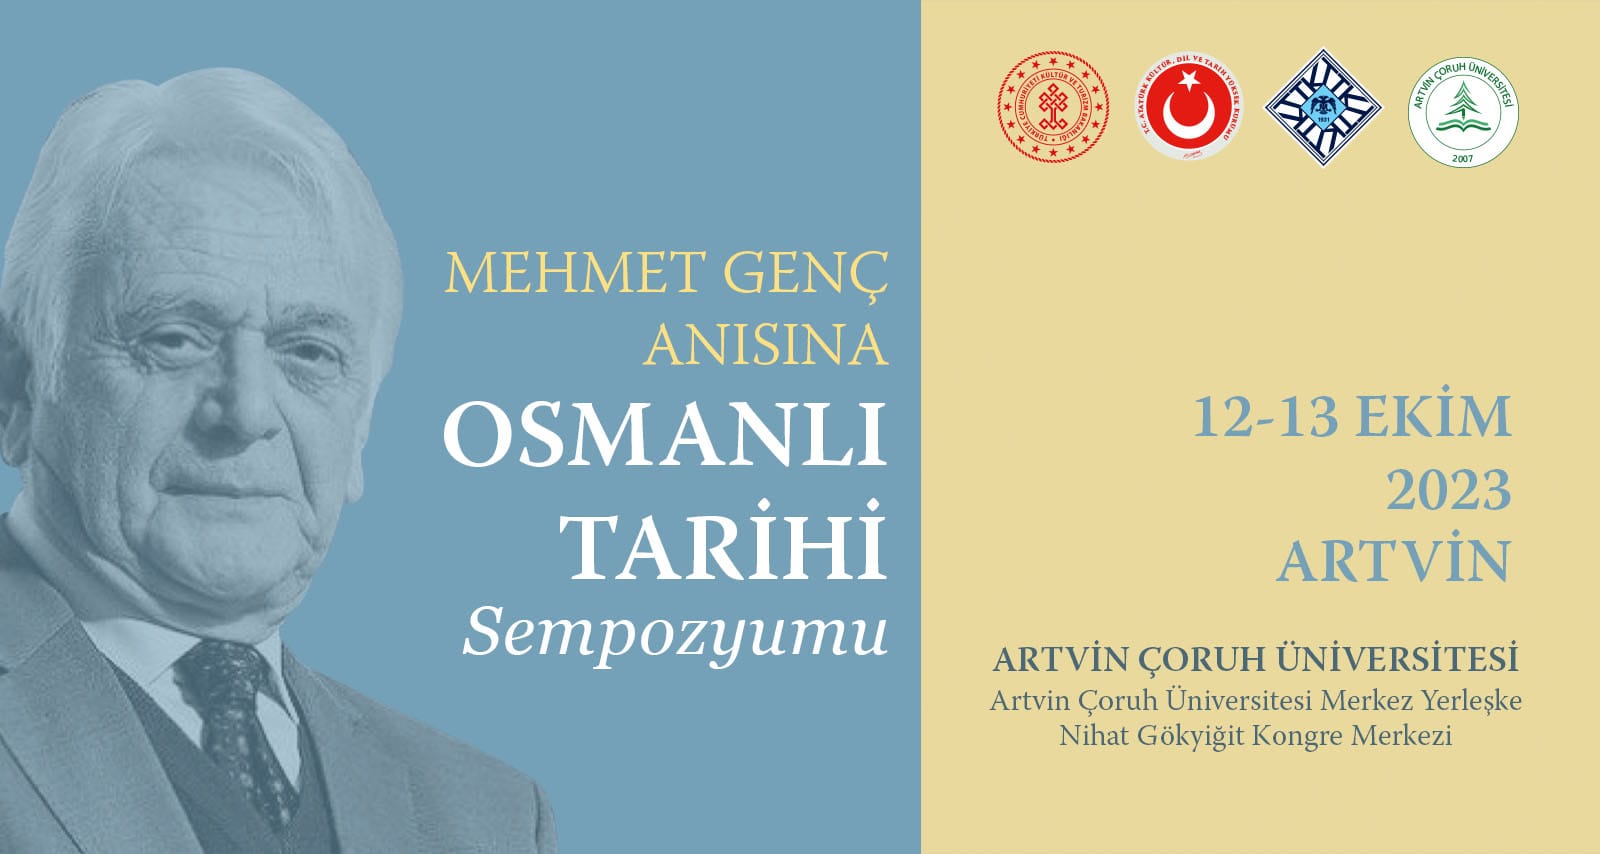  Mehmet Genç Anısına Osmanlı Tarihi Sempozyumu